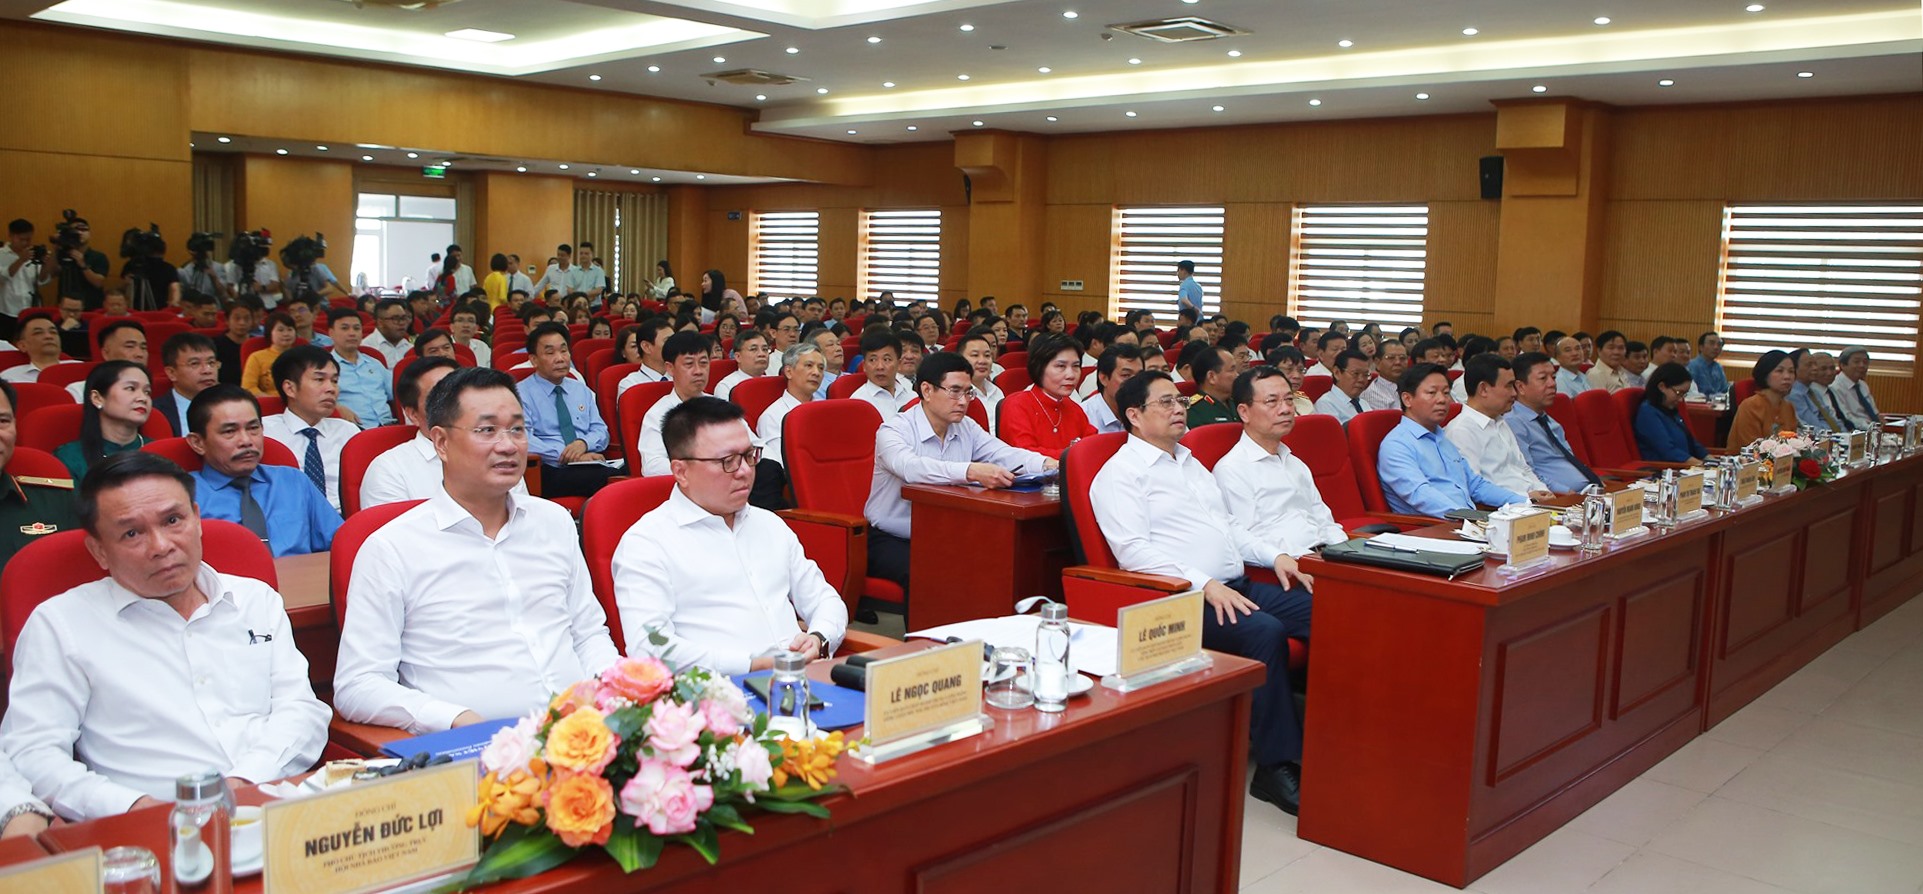 Thủ tướng Phạm Minh Chính xúc động khi chứng kiến sự cống hiến bền bỉ, dẻo dai của các nhà báo - Ảnh 3.